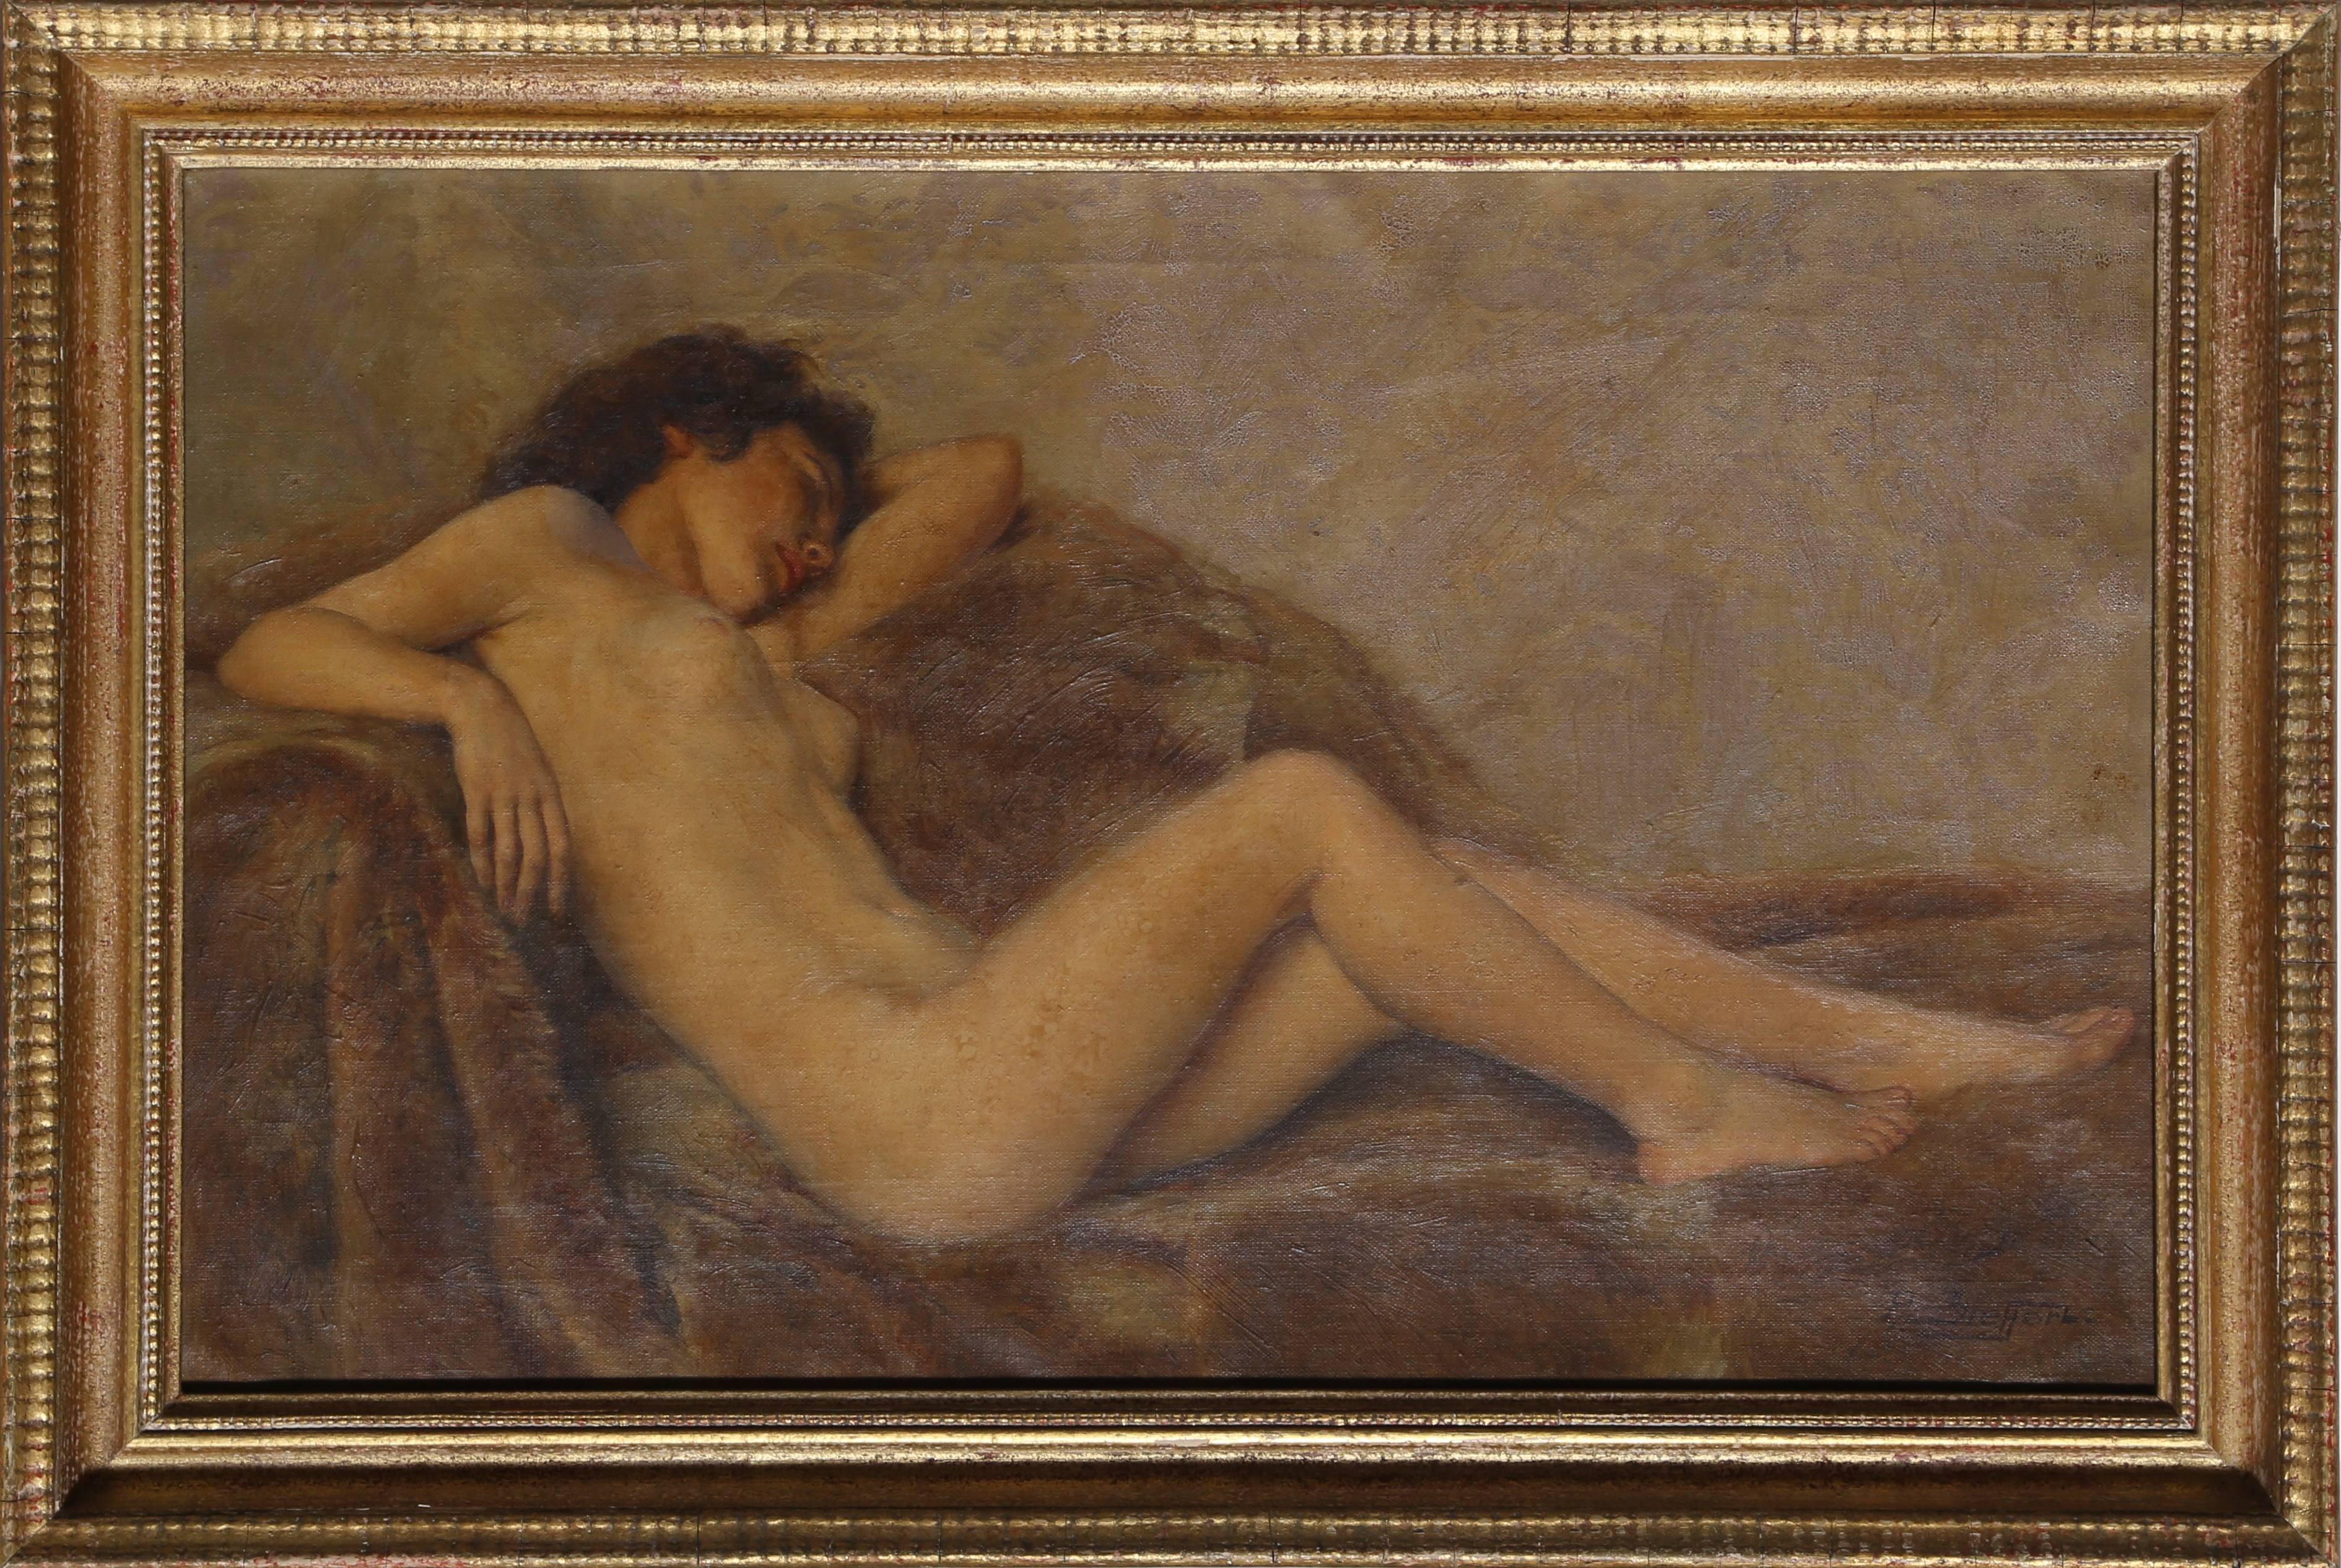 Artistics : Paul Sieffert, Français (1874 - 1957)
Titre : Nu couché
Année : vers 1940
Moyen d'expression : Huile sur toile, signée à gauche.
Taille : 15 x 24 in. (38.1 x 60.96 cm)
Taille du cadre : 18.5 x 27.5 pouces